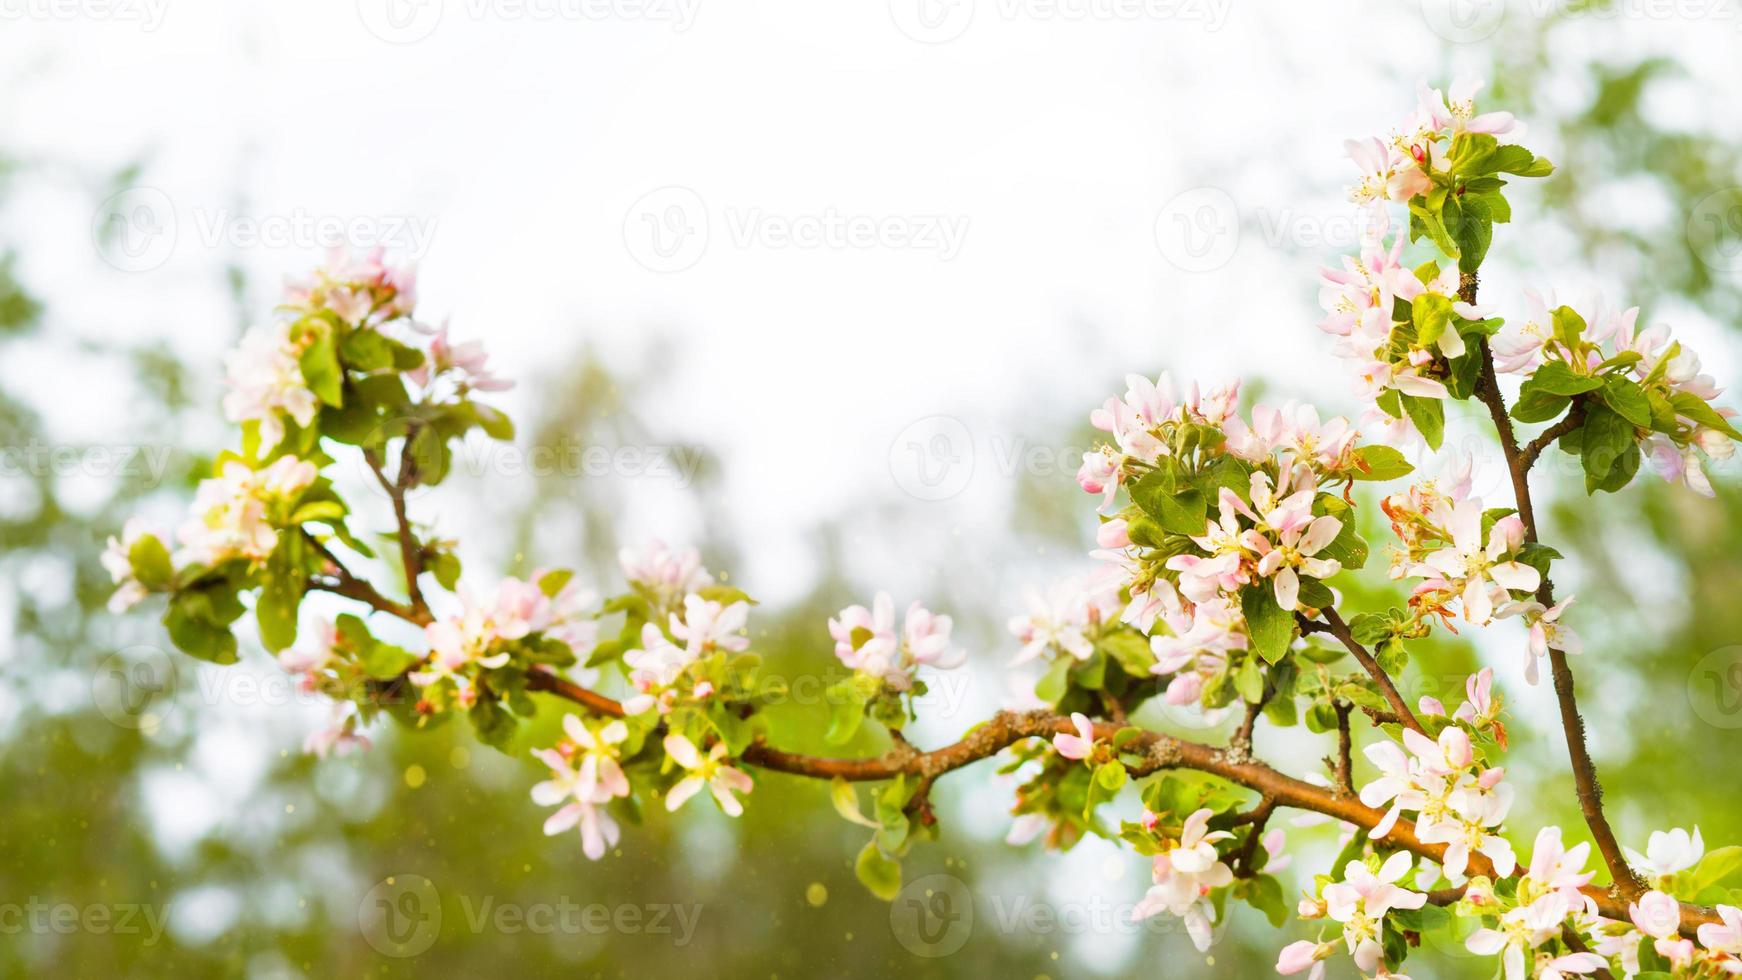 rami di melo sbocciano con petali rosa e bianchi. primavera, meleto, l'inizio di una nuova vita. ecologia, naturalezza, matrimonio, romanticismo, amore foto